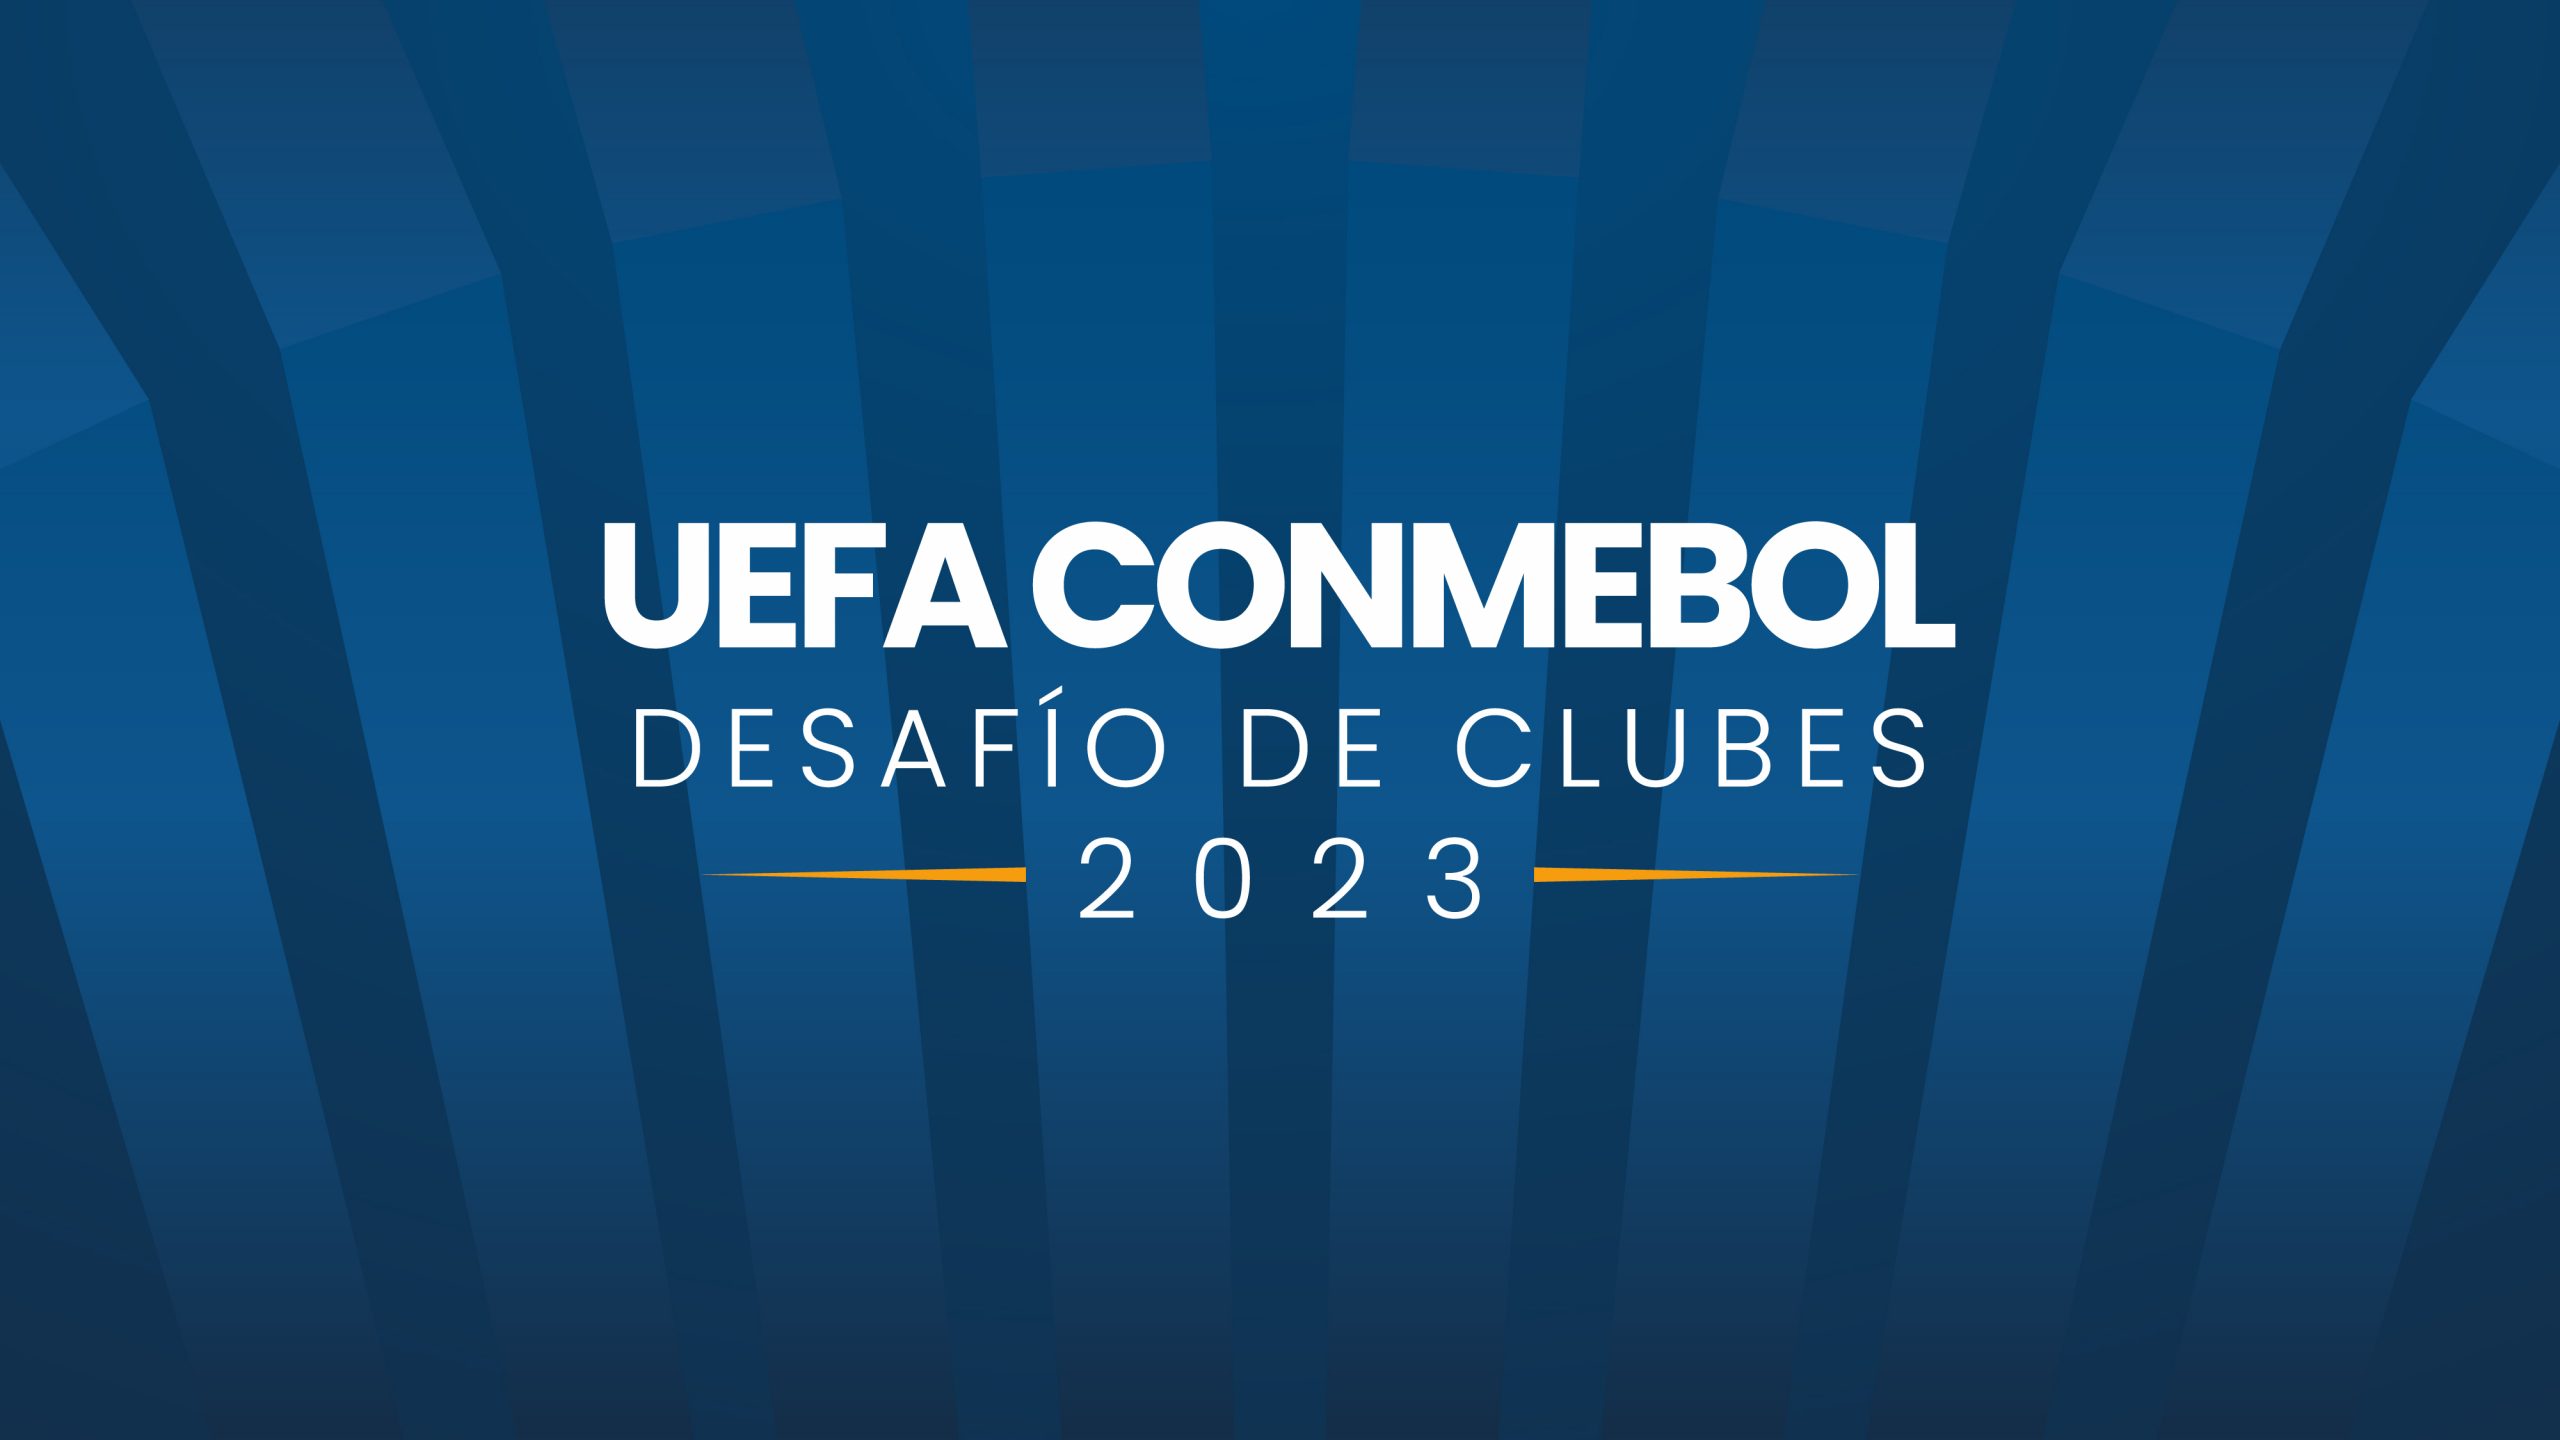 La UEFA y la CONMEBOL lanzan el Desafío de Clubes 2023 CONMEBOL